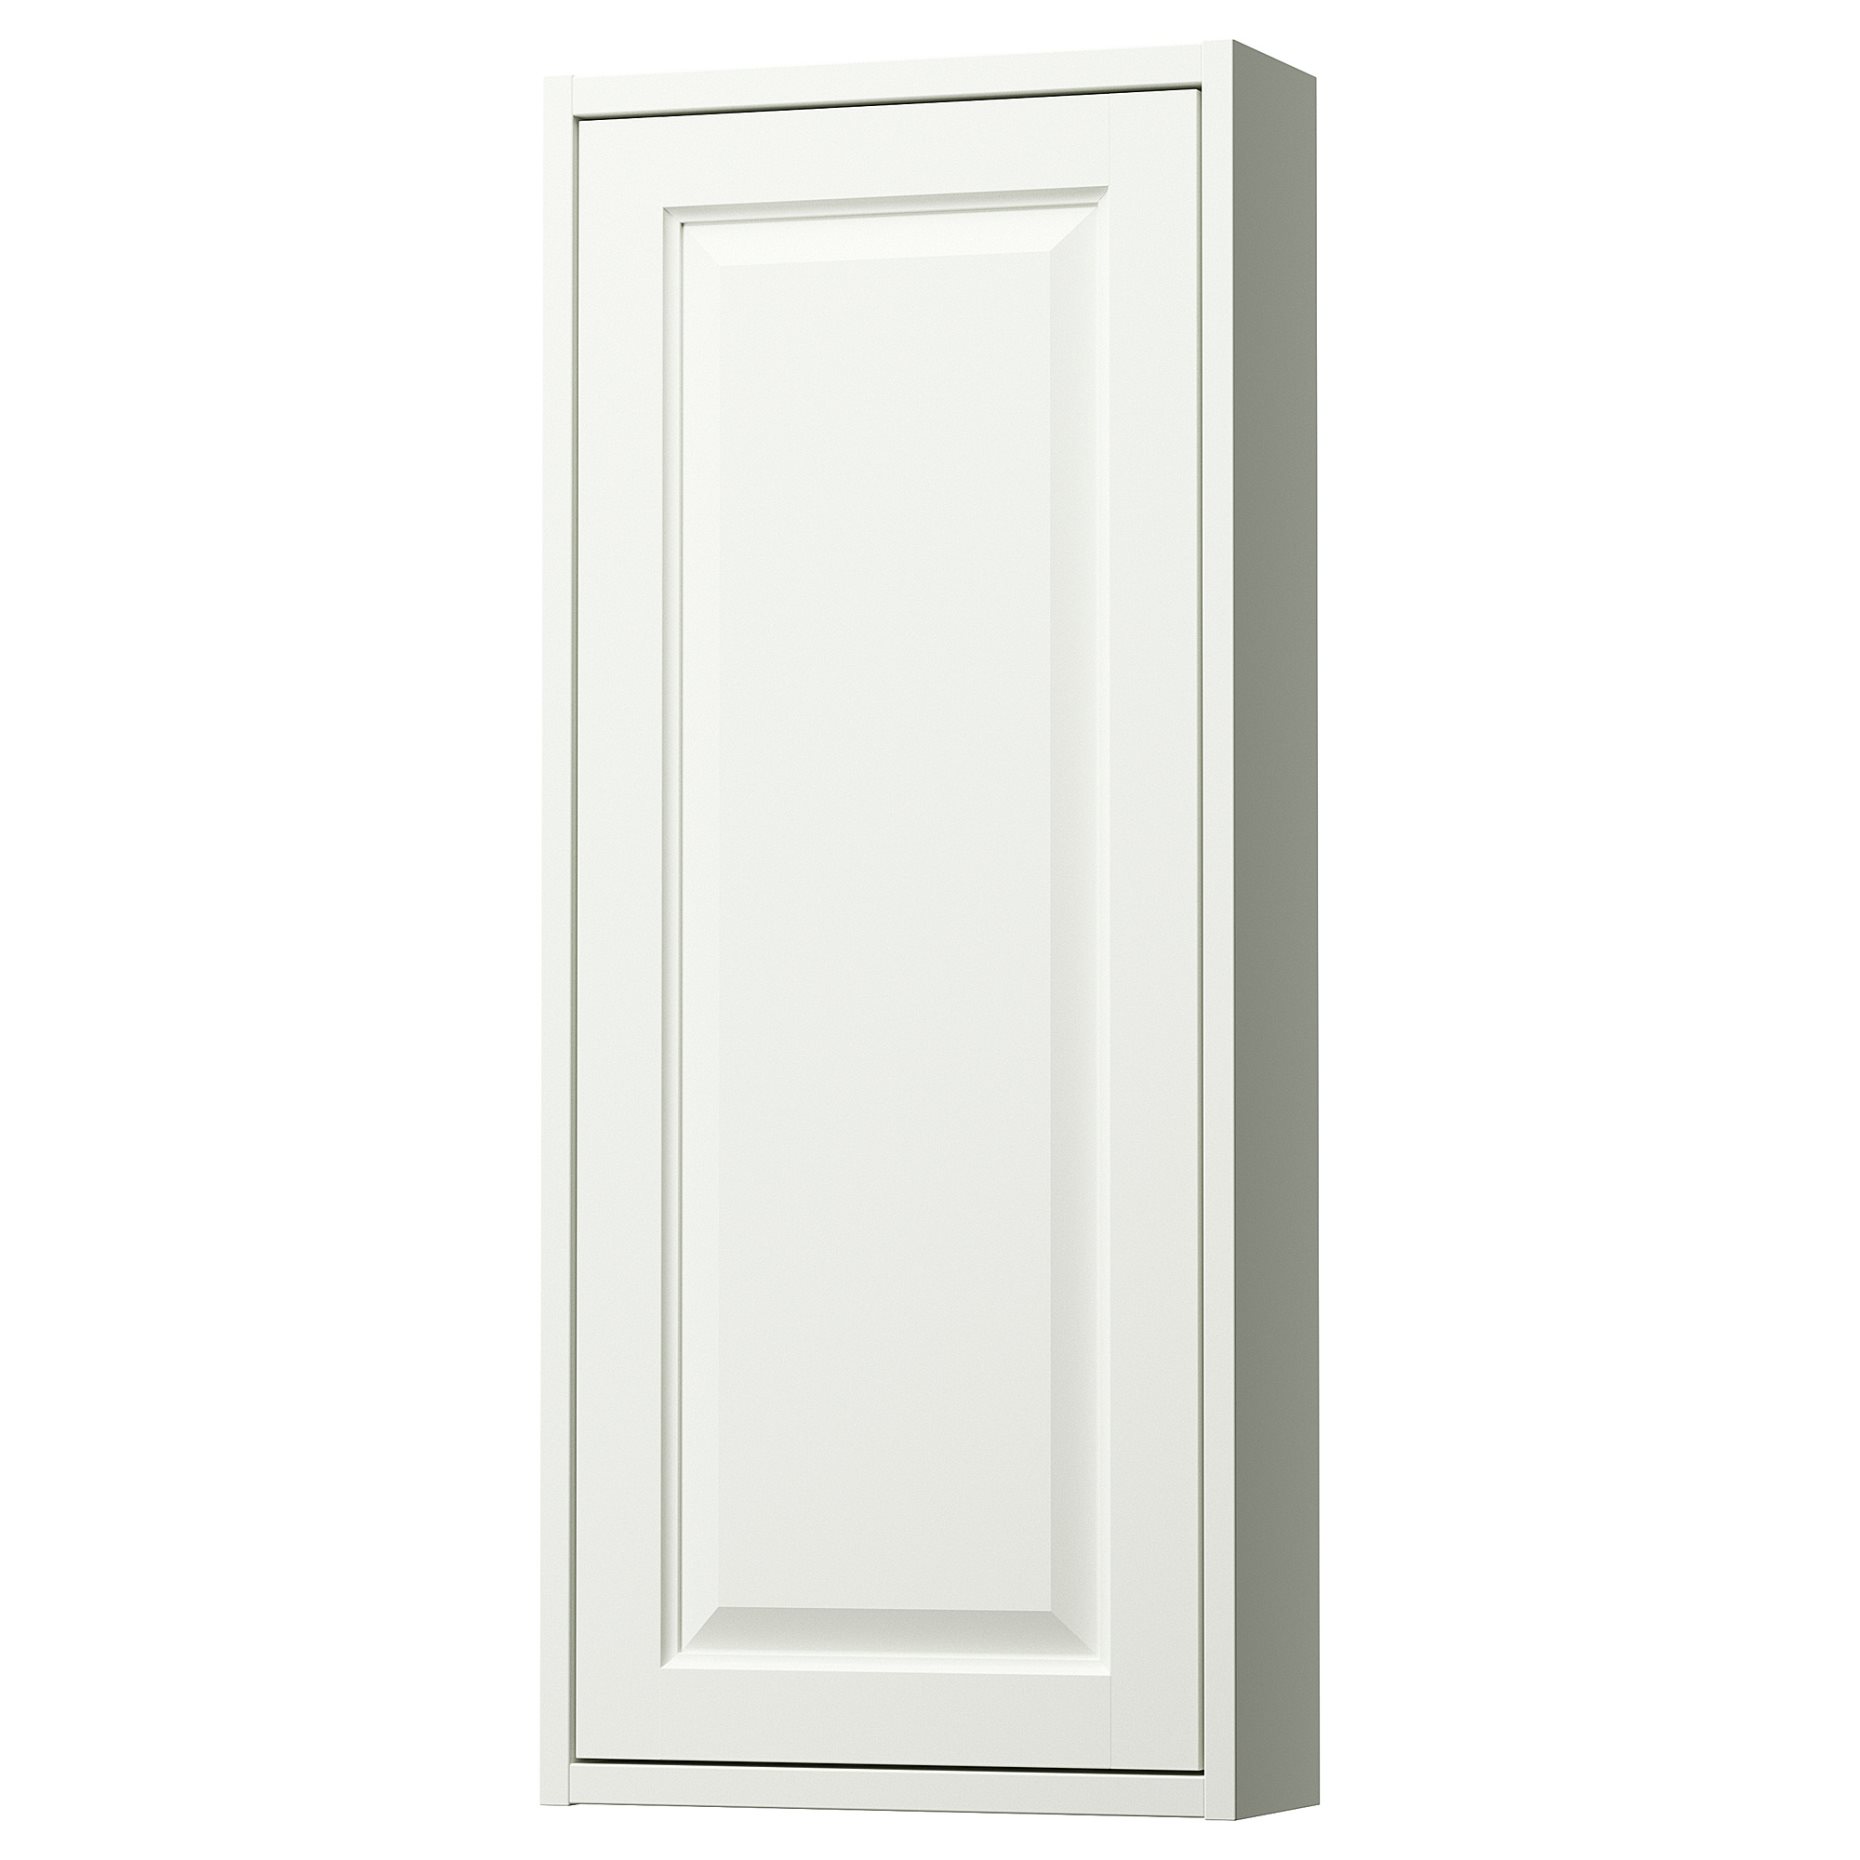 TANNFORSEN, wall cabinet with door, 40x15x95 cm, 505.351.08